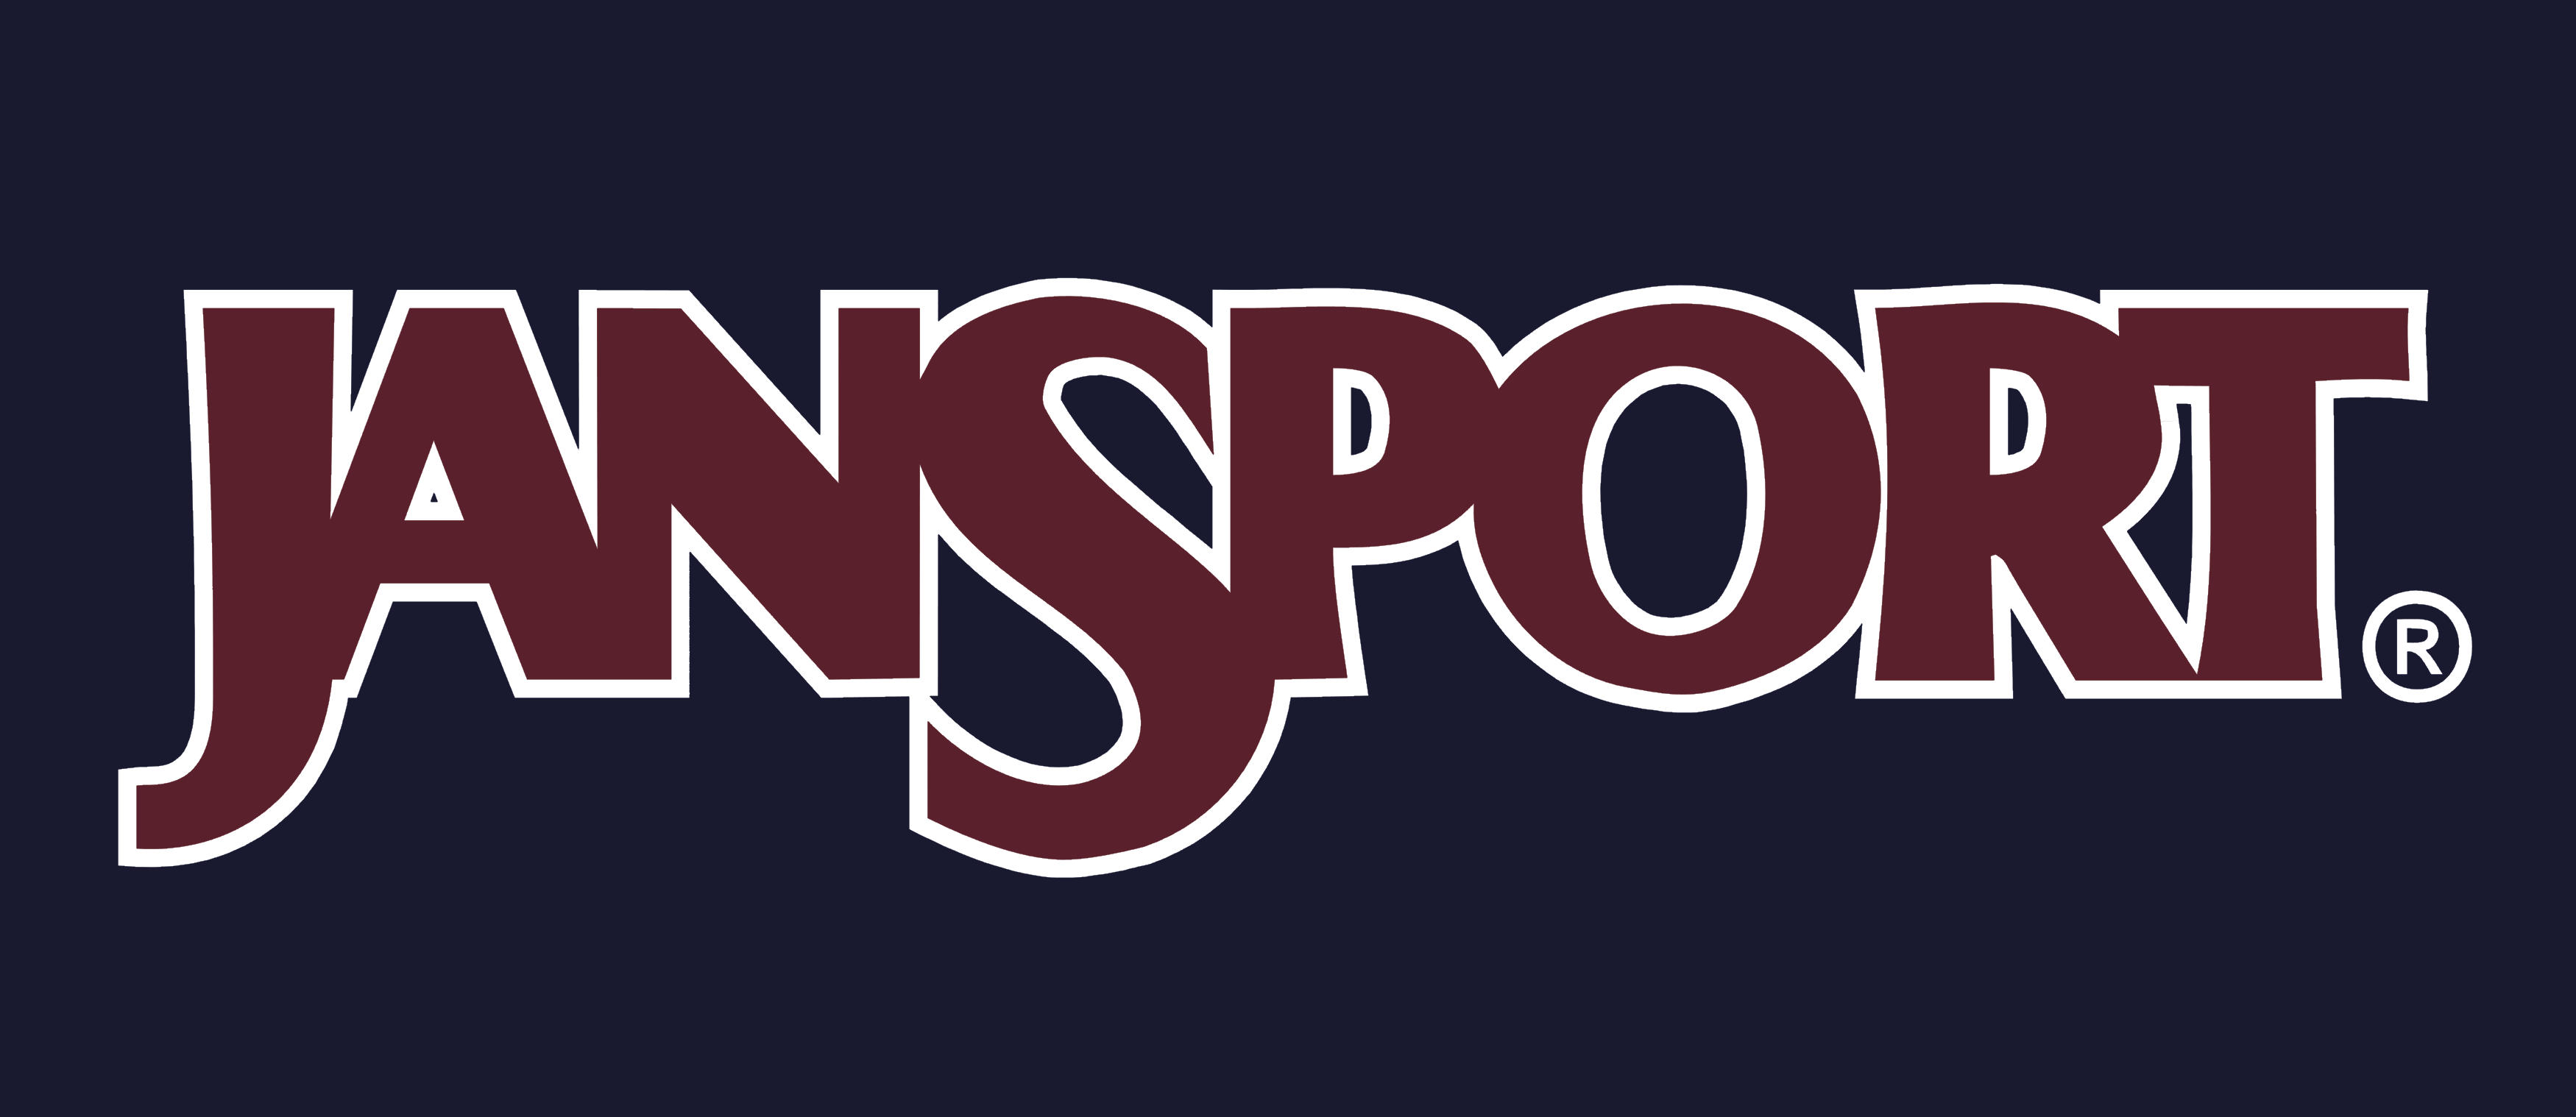 Old JanSport Logo - JanSport logo – Logos Download